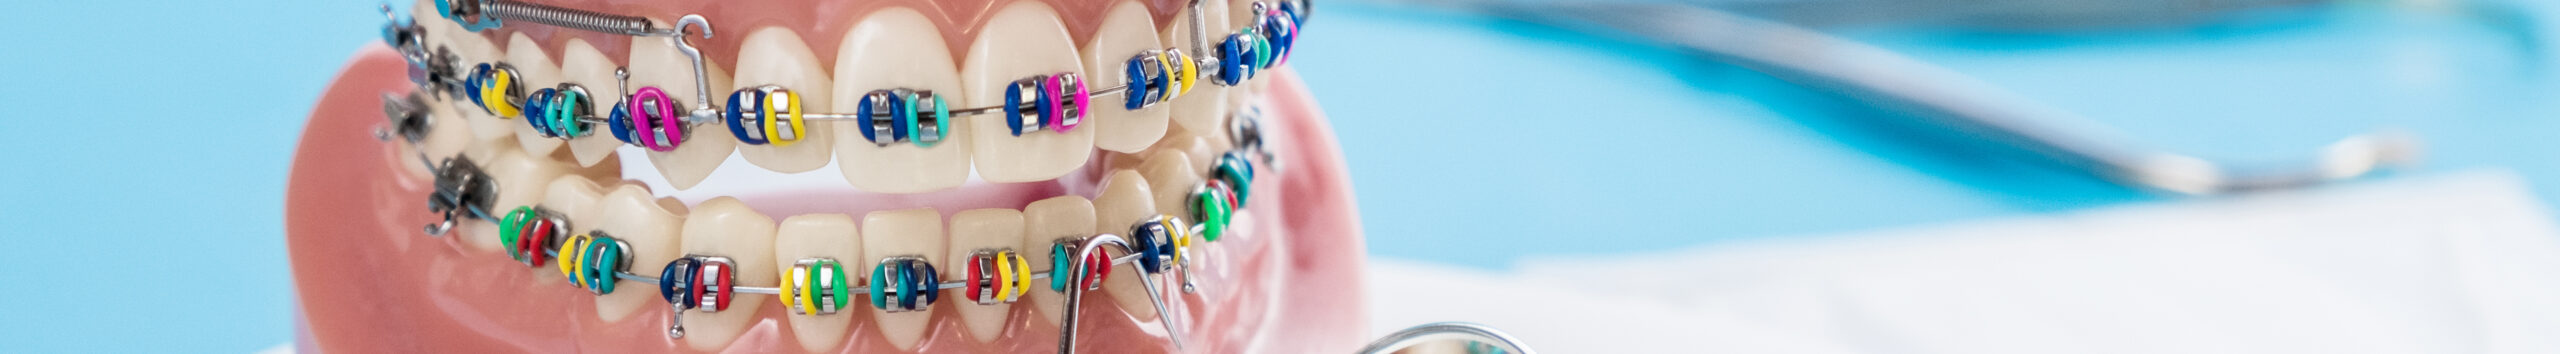 Основные этапы ортодонтического лечения